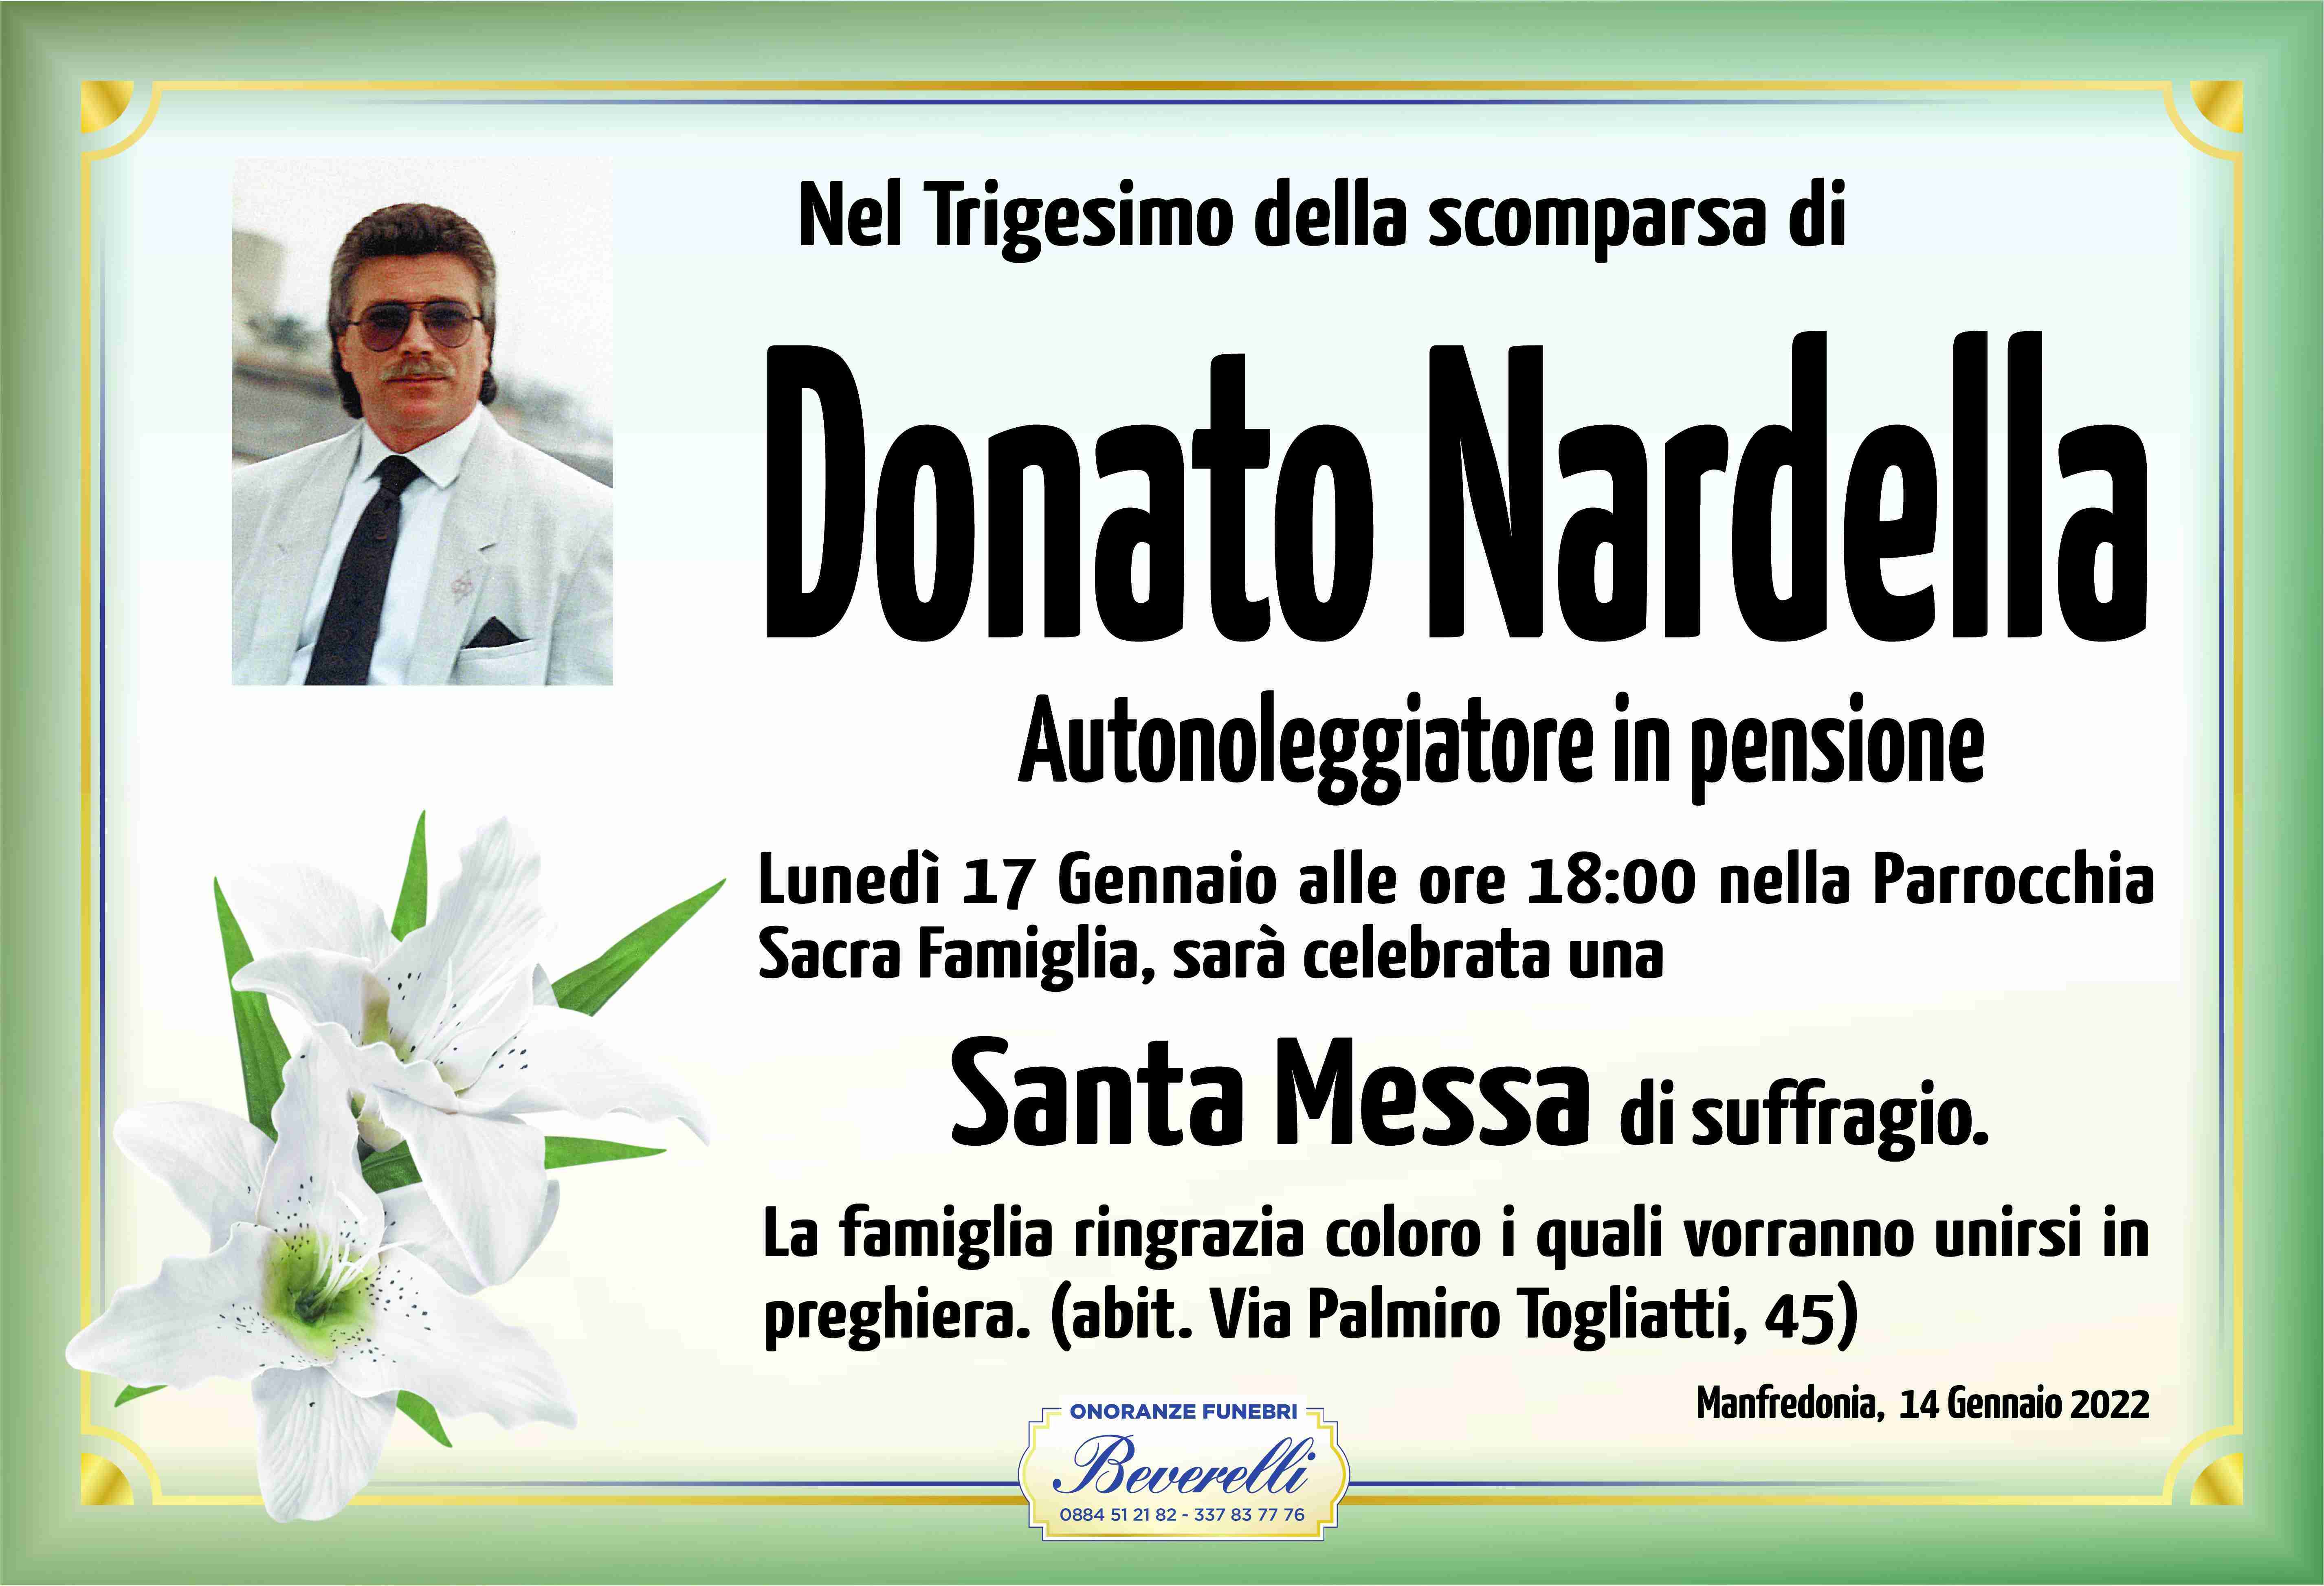 Donato Nardella